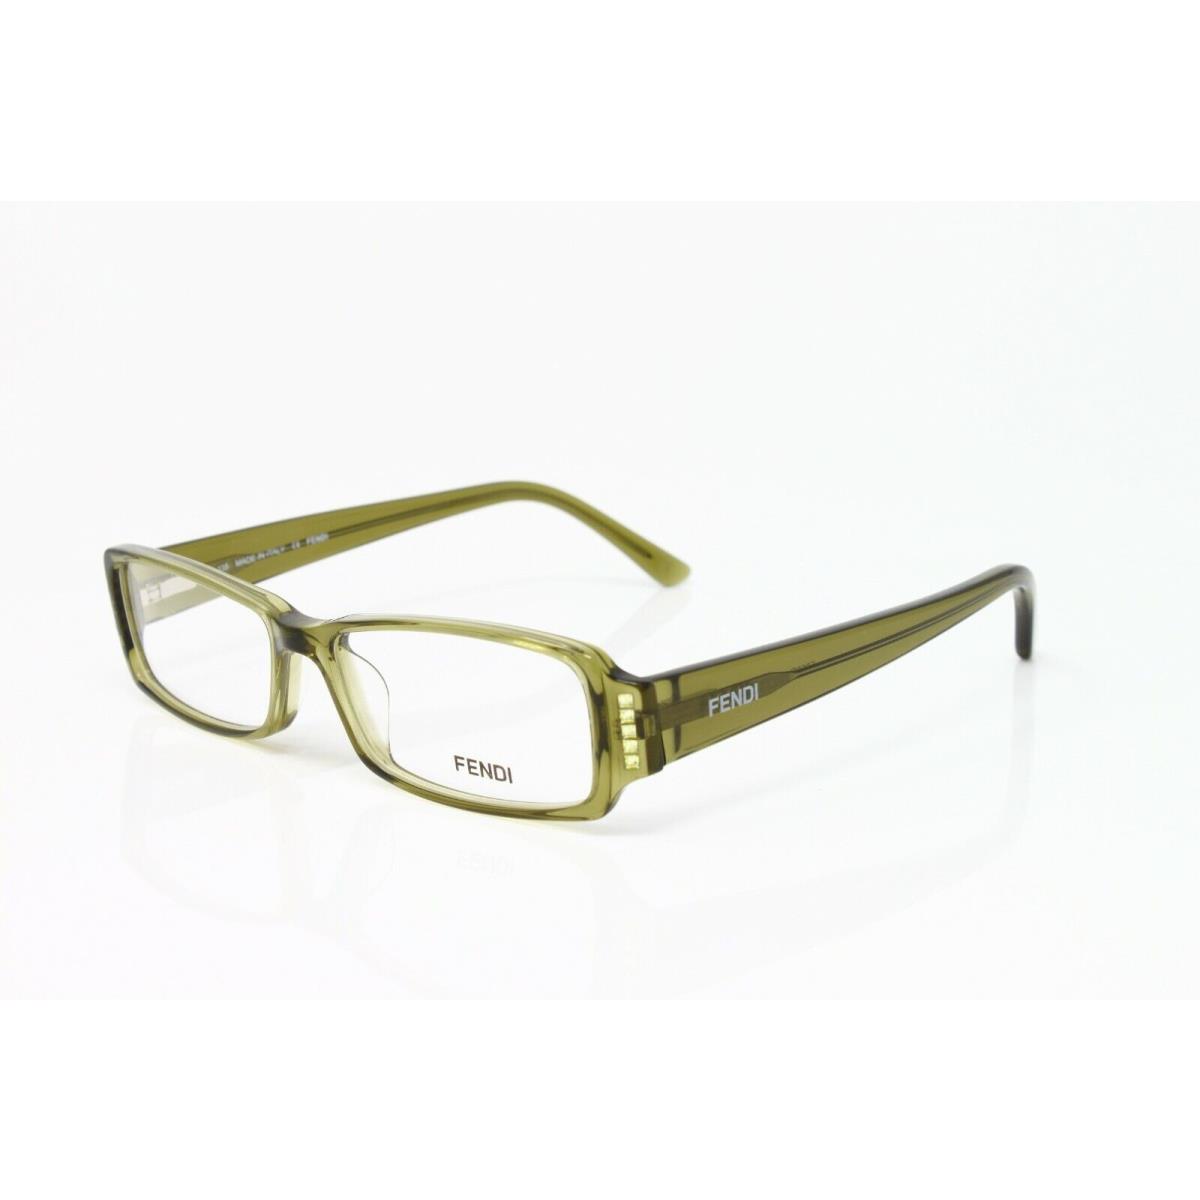 Fendi eyeglasses  - Green , Green Frame 0